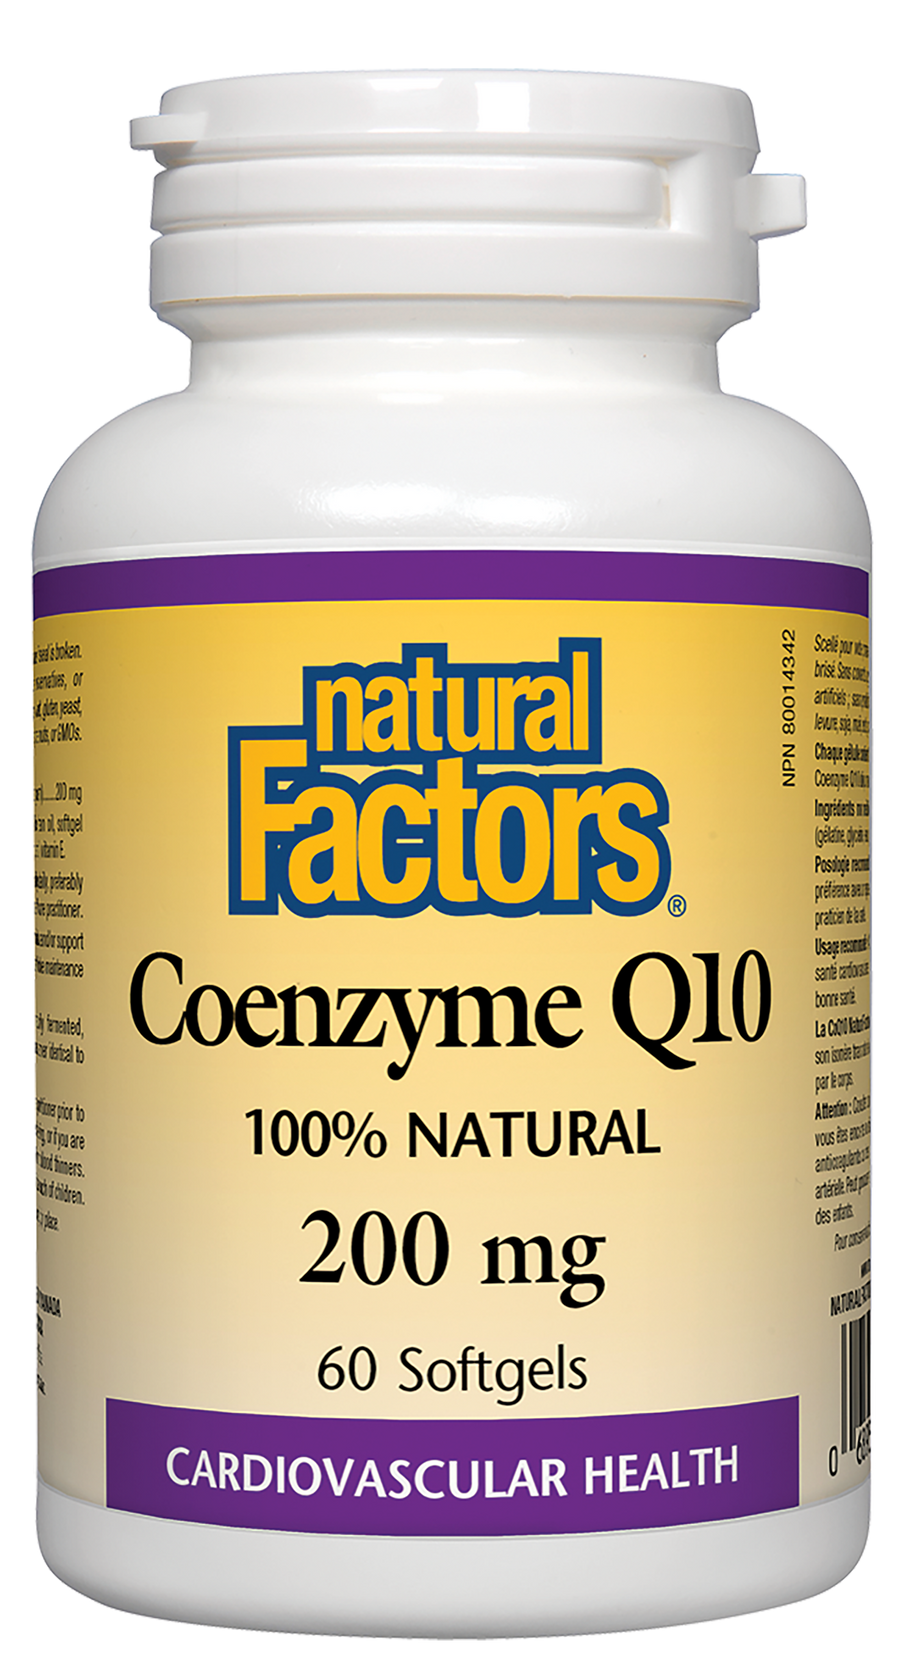 Natural Factors Coenzyme Q10 100% Natural 200 mg Softgels